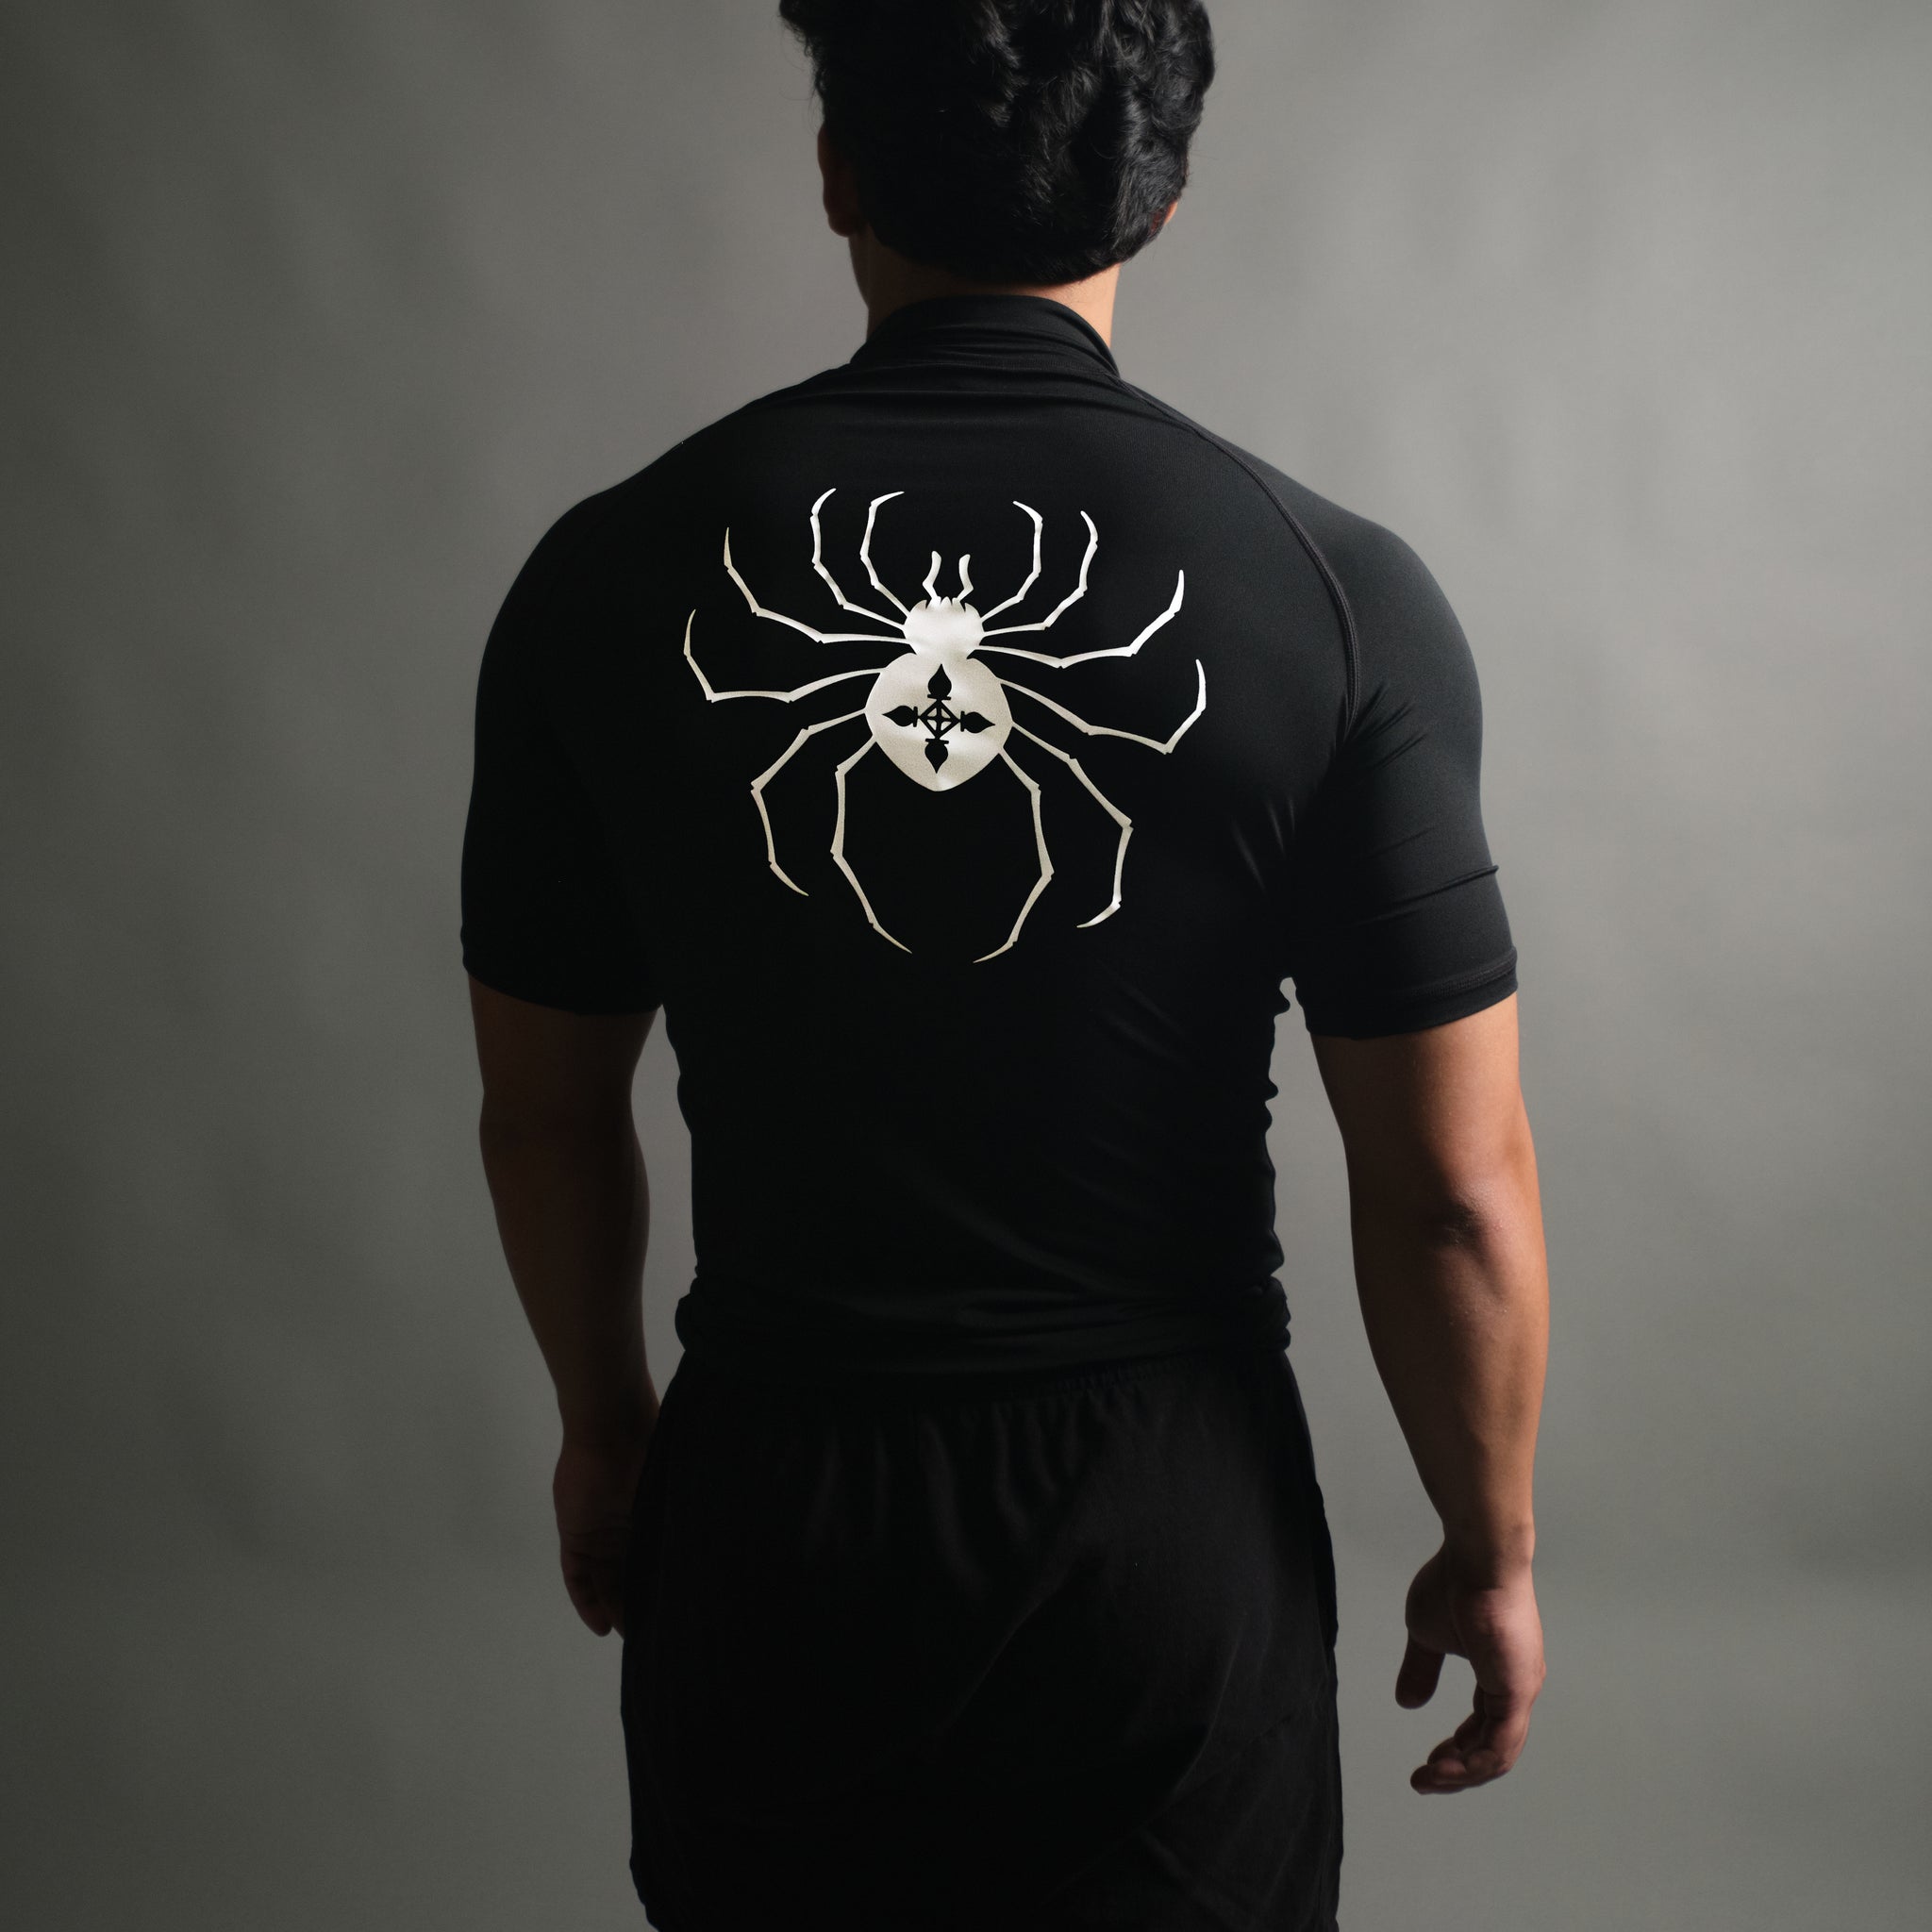 Chrollo Spider Mockneck Compression Short Sleeve in Black